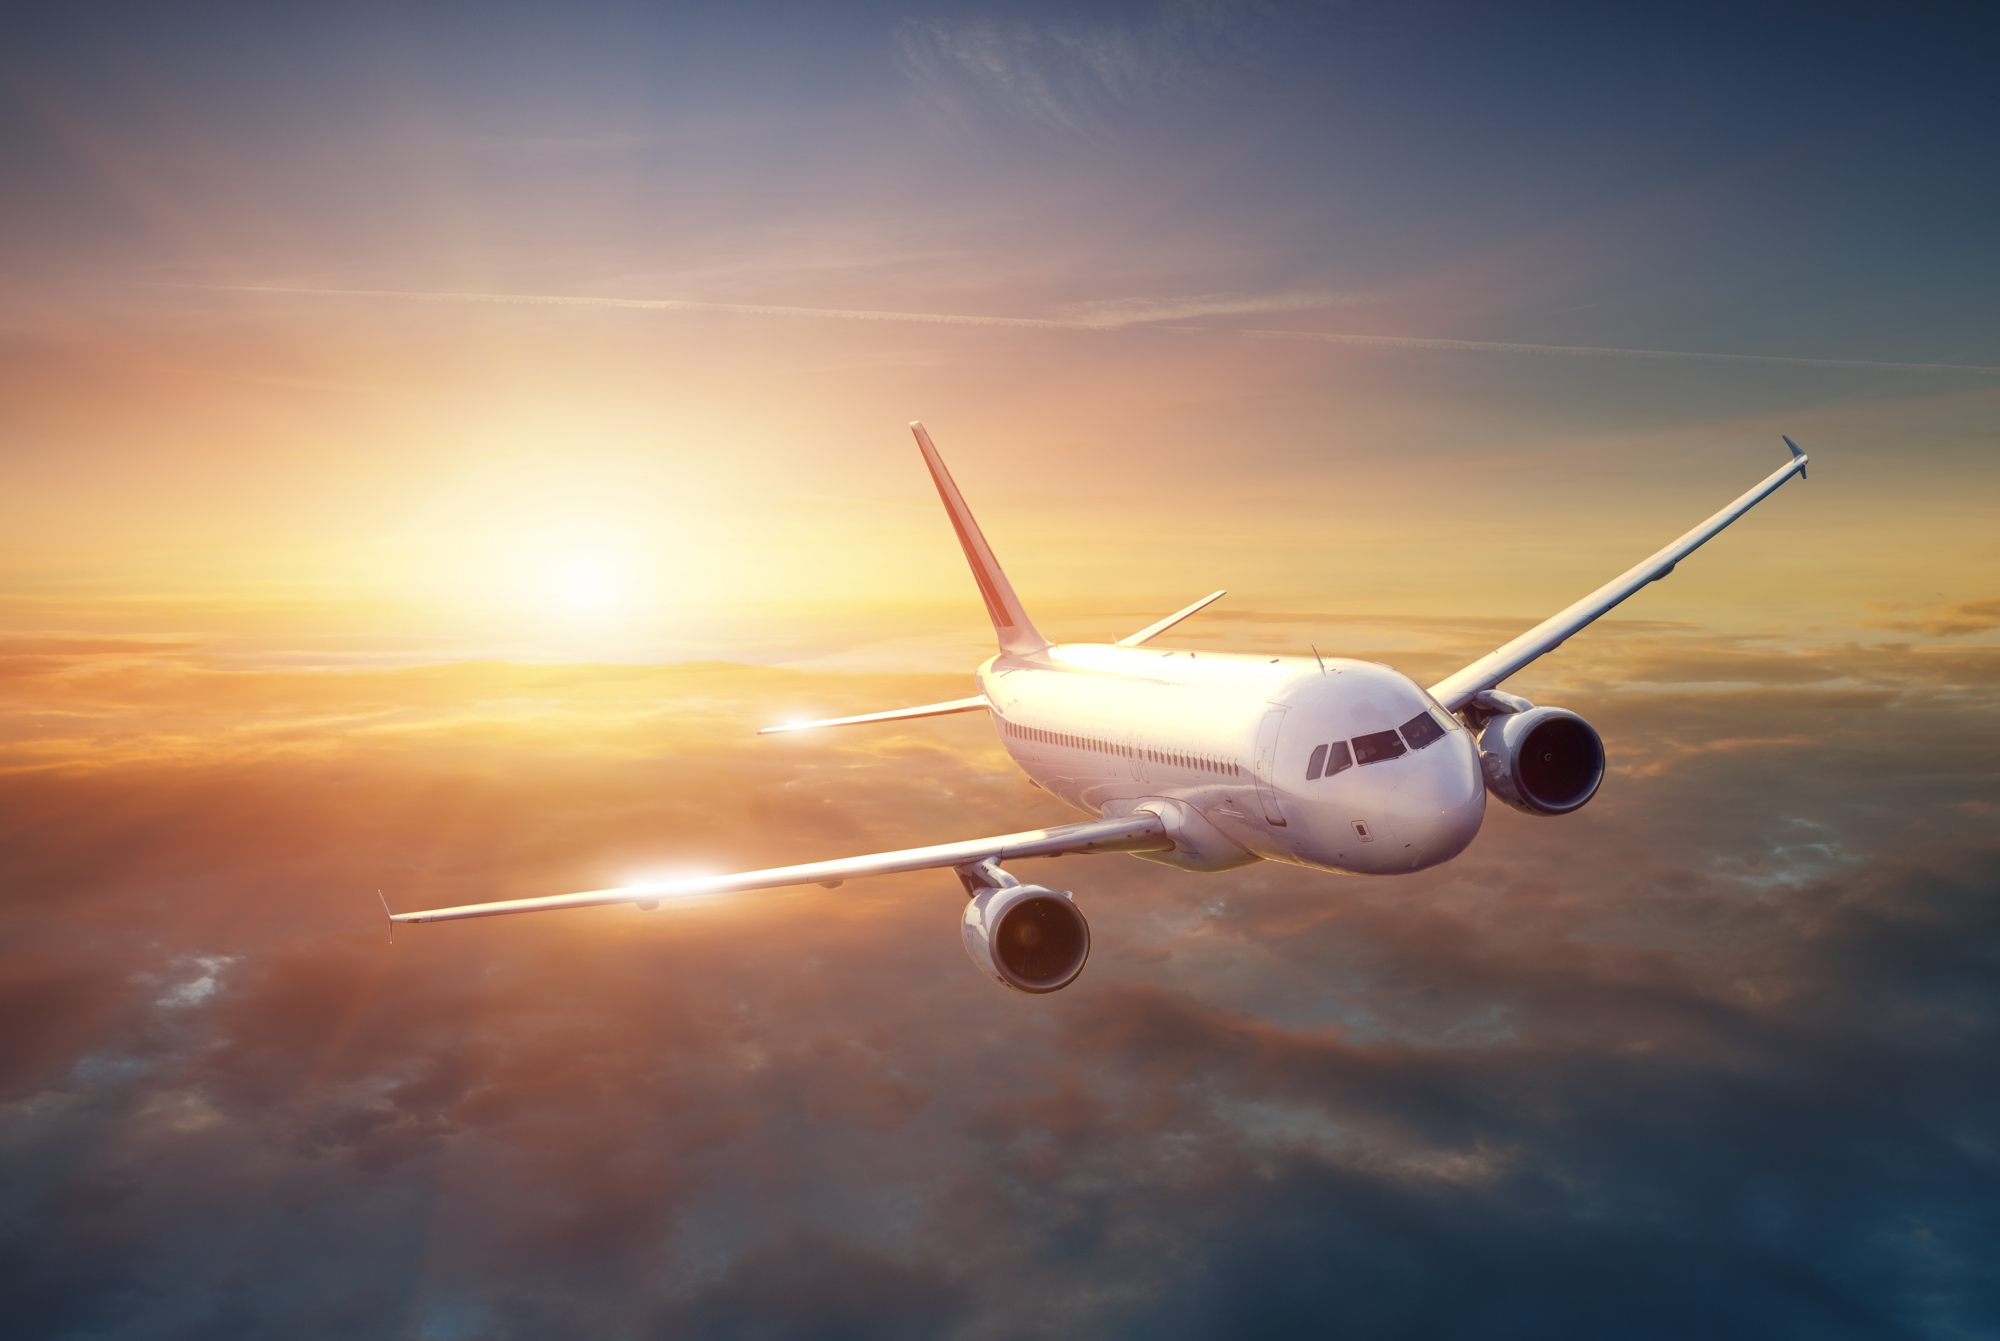 Au cours des prochaines décennies, les avions de ligne devraient consommer un peu plus de carburant, en moyenne, lors des liaisons transatlantiques entre l'Europe et l'Amérique du Nord. © IM_photo, Sutterstock